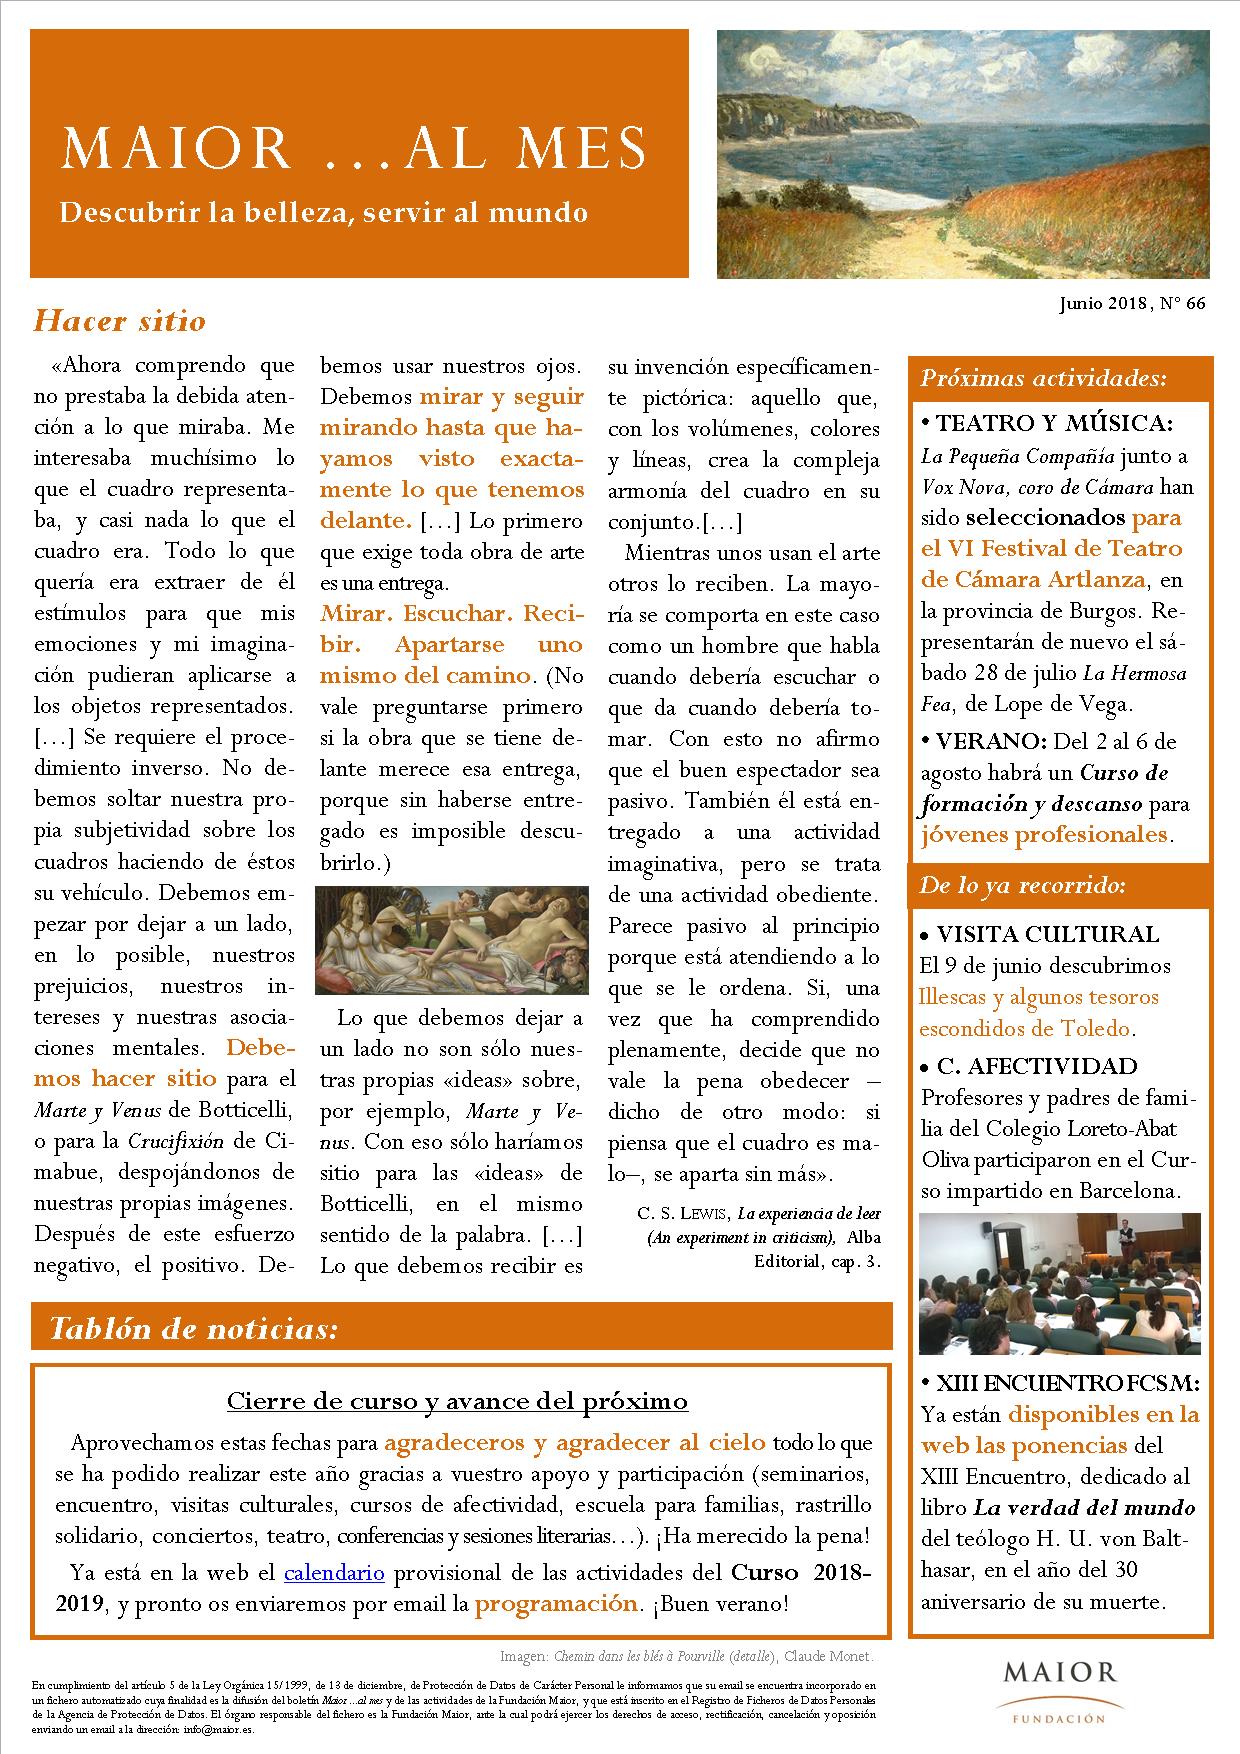 Boletín mensual de noticias y actividades de la Fundación Maior. Edición de julio 2018